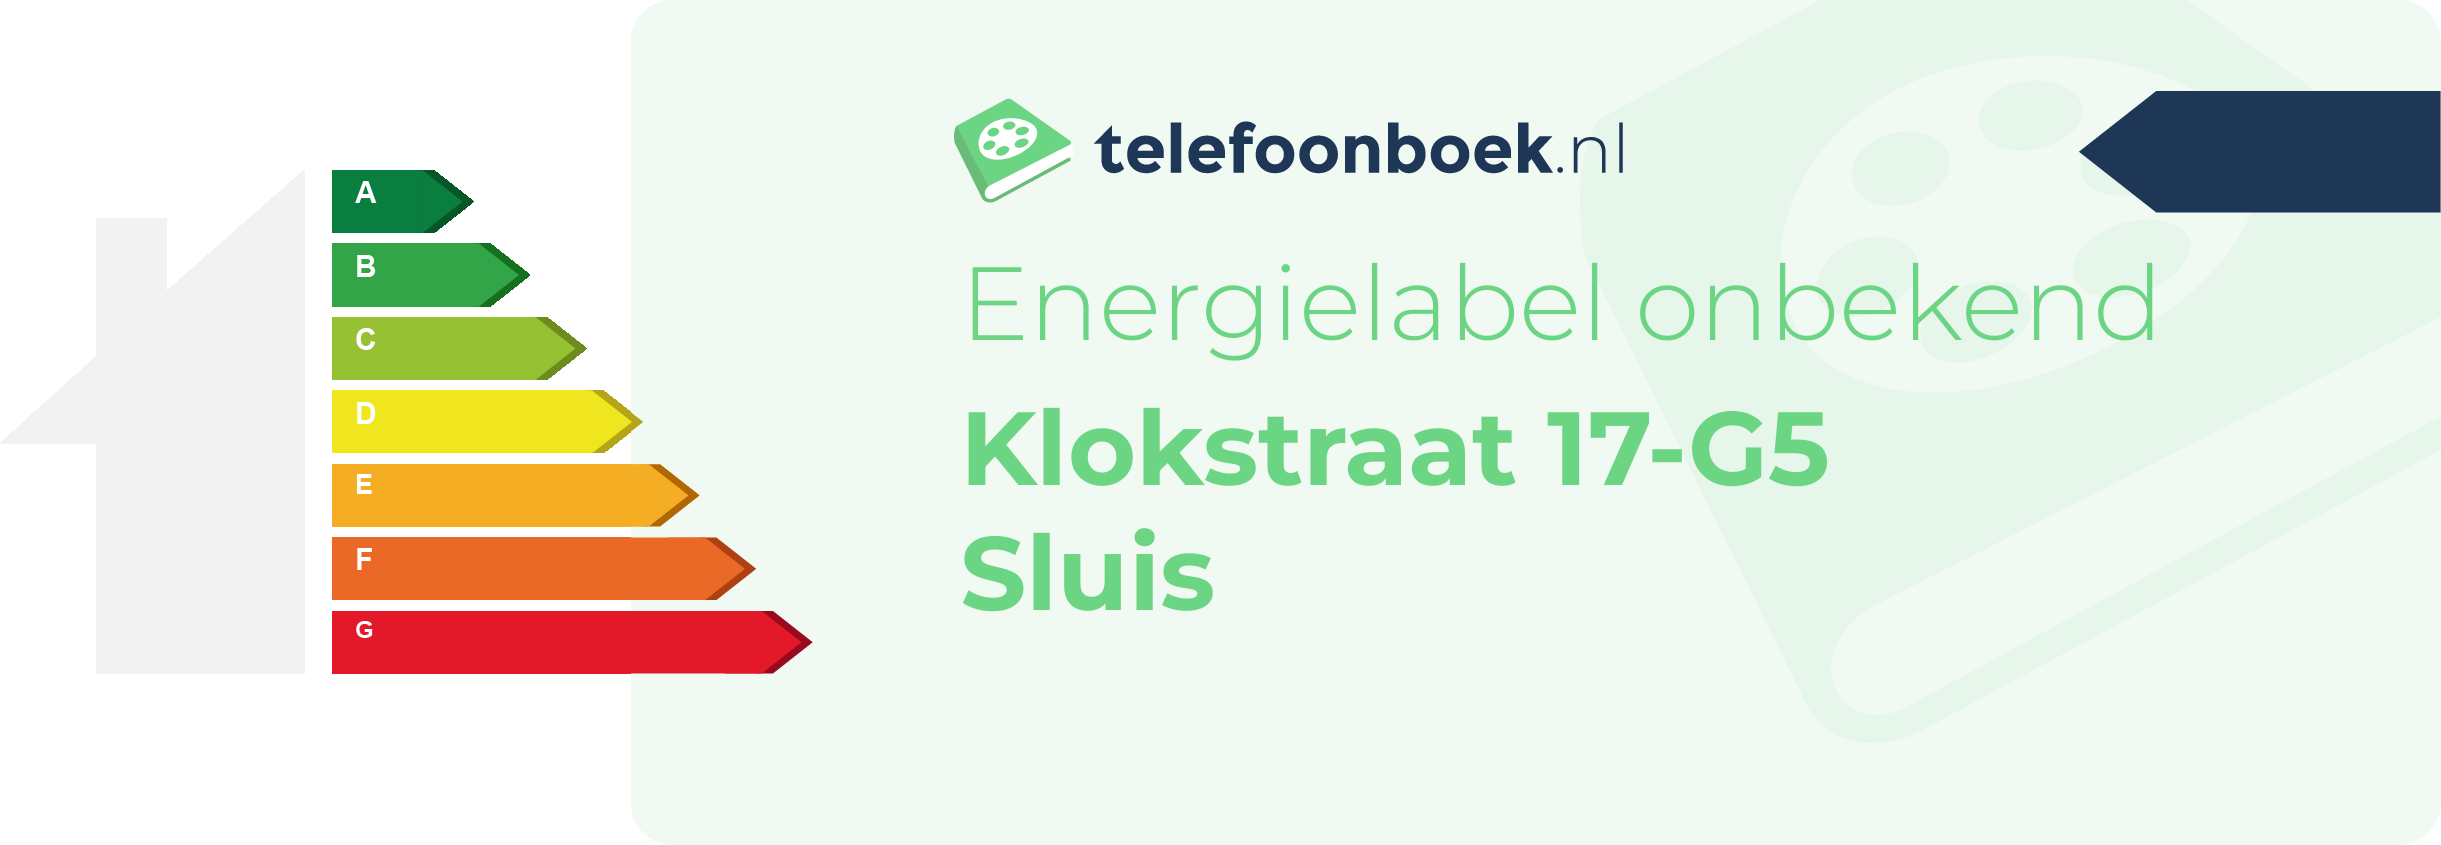 Energielabel Klokstraat 17-G5 Sluis